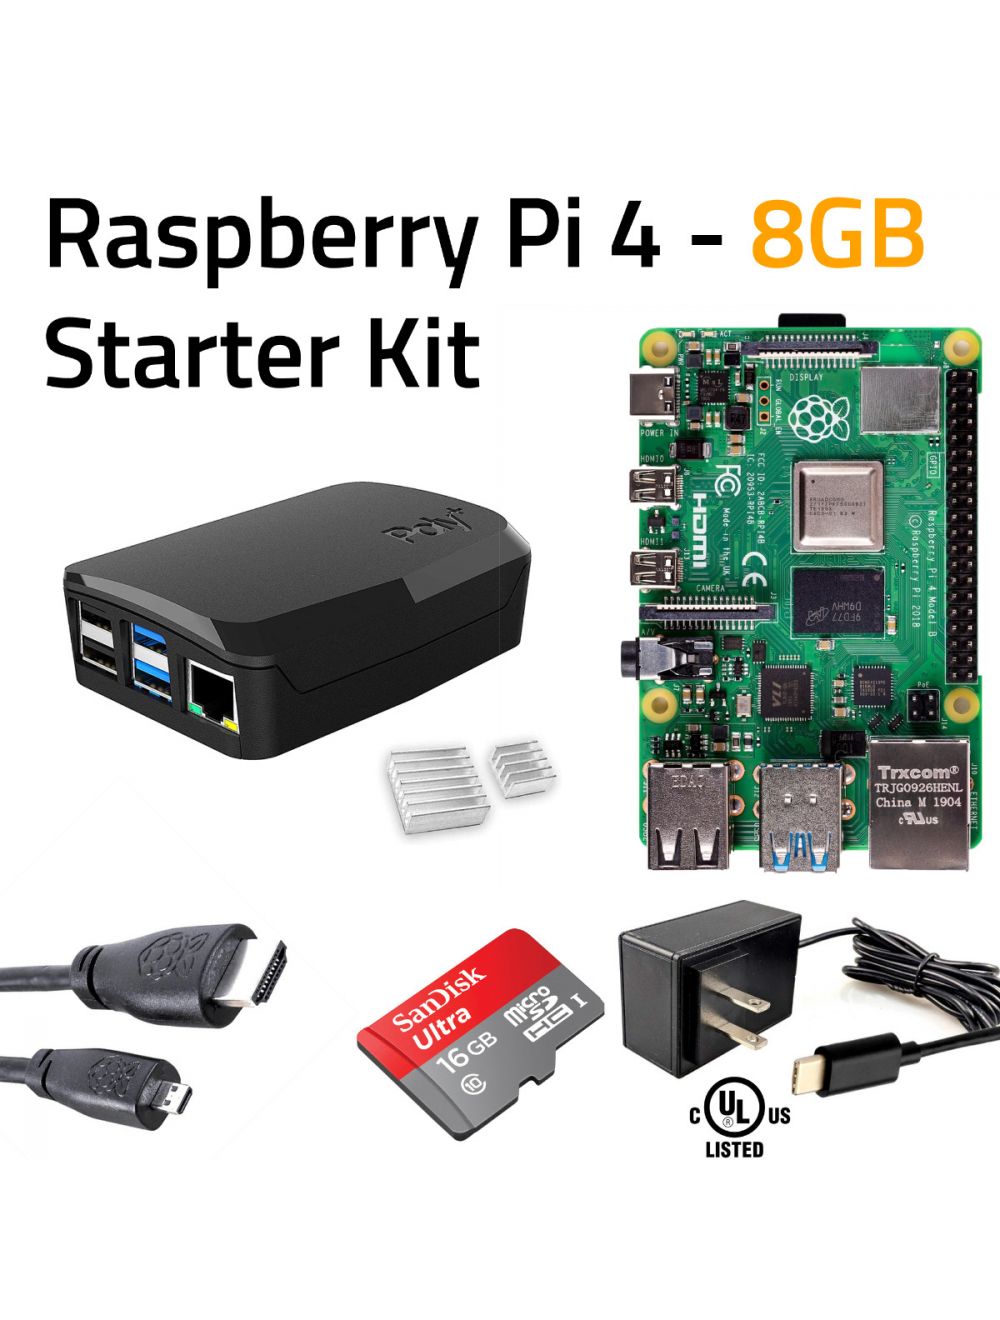 MakerBright Raspberry Pi 4 Starter Kit (8GB)